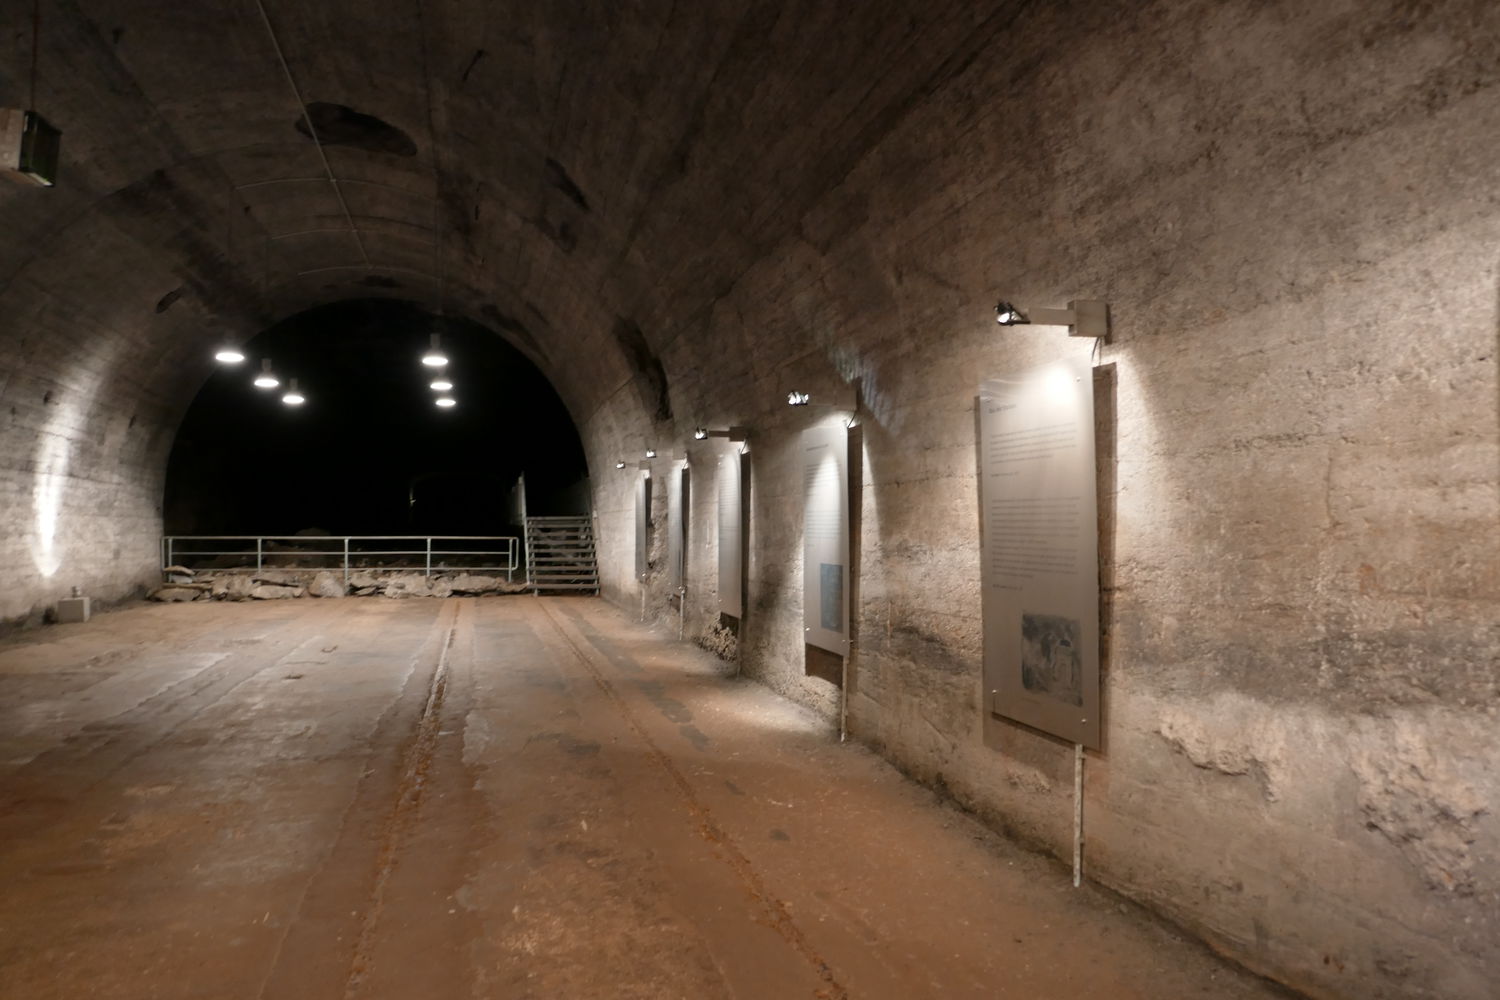 Eingangsbereich des Tunnelsystems